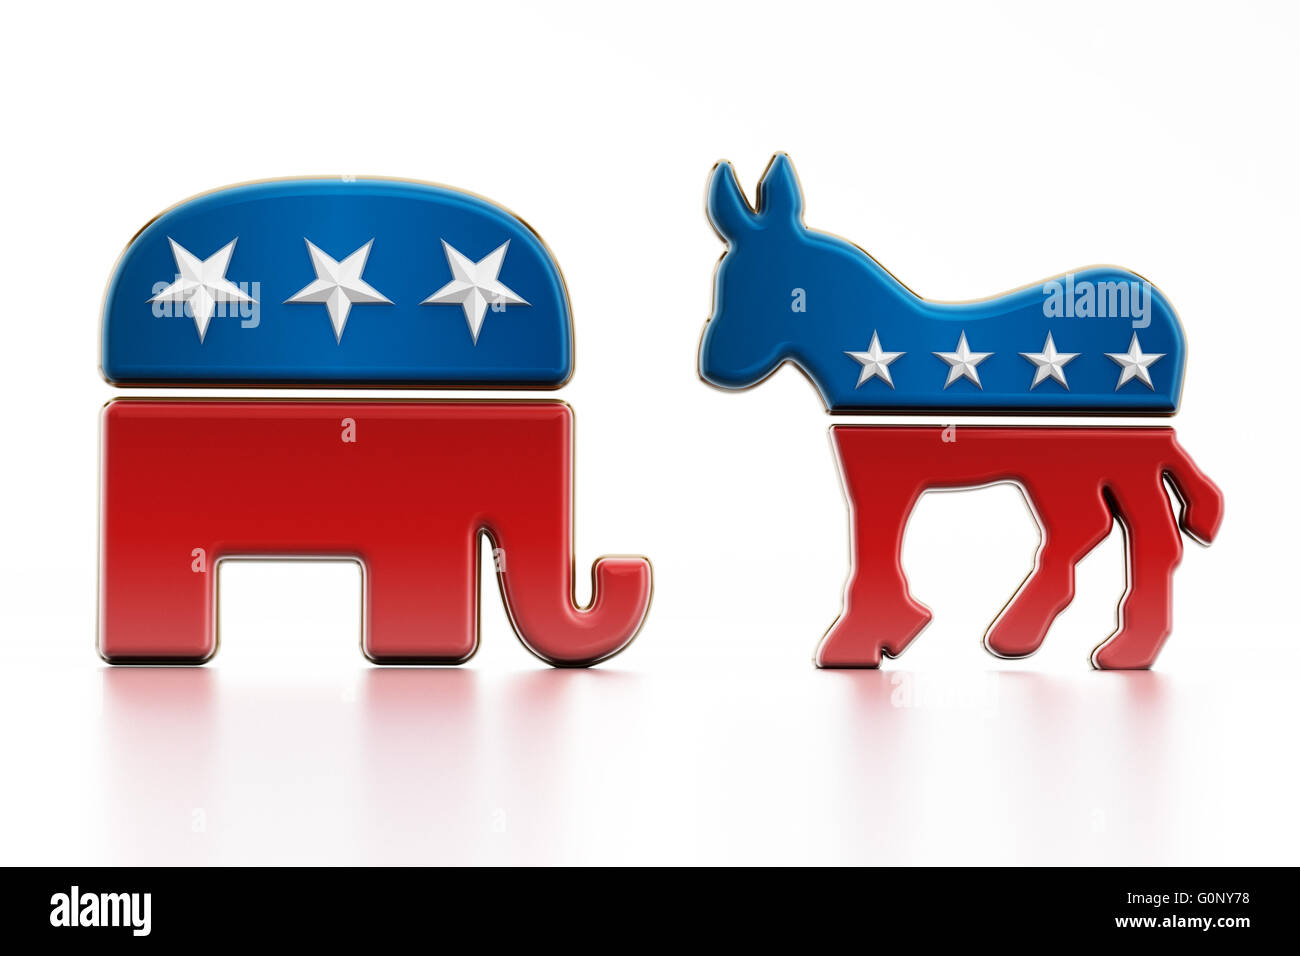 USA politische Partei Symbole isoliert auf weißem Hintergrund. Elefant für die Republikaner und die Demokraten Esel. Stockfoto